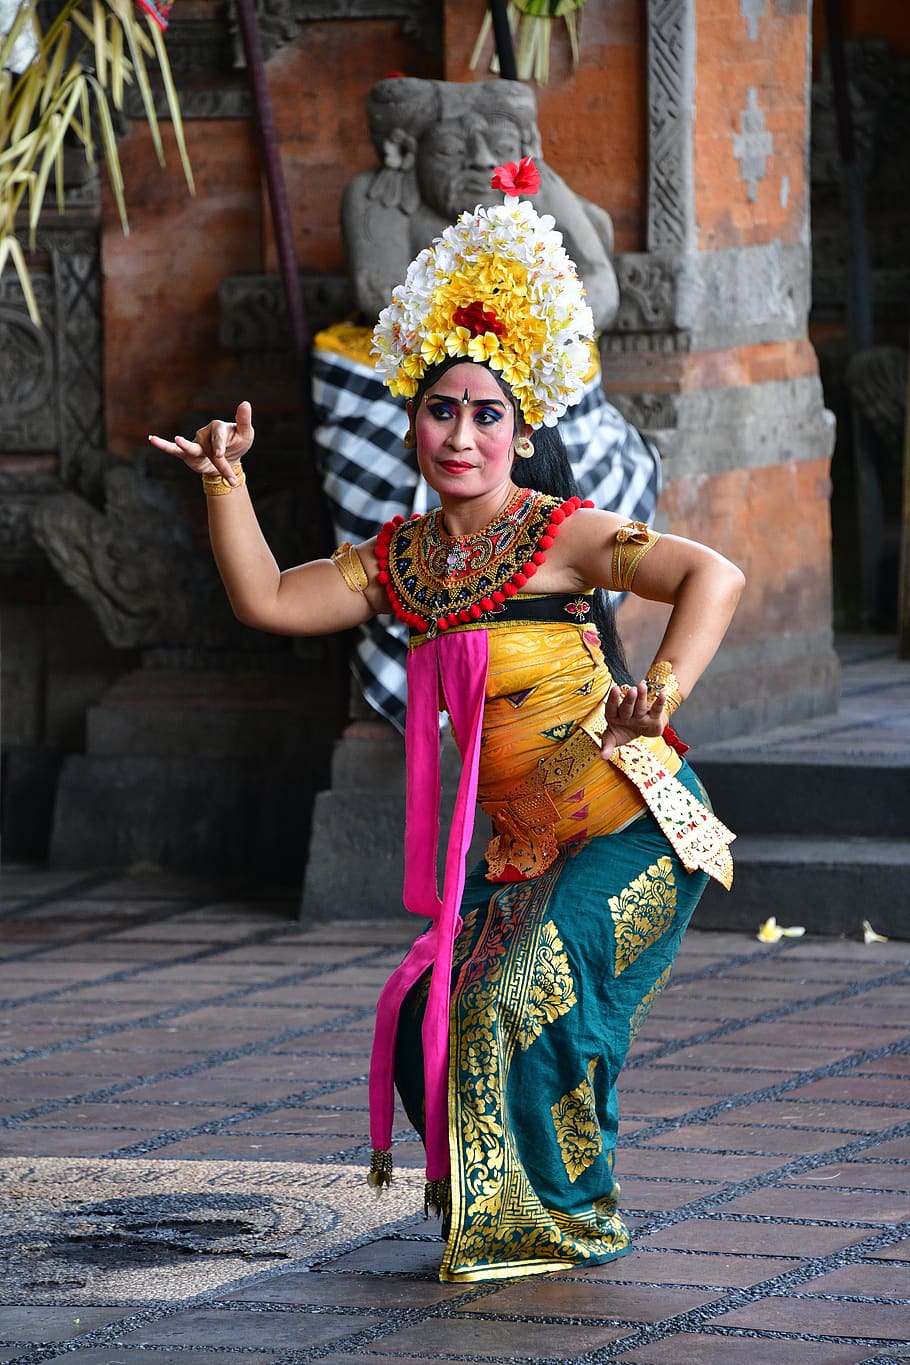 Bali, penari, Indonesia, tradisi, menari, kostum, orang-orang, gadis, perjalanan, budaya